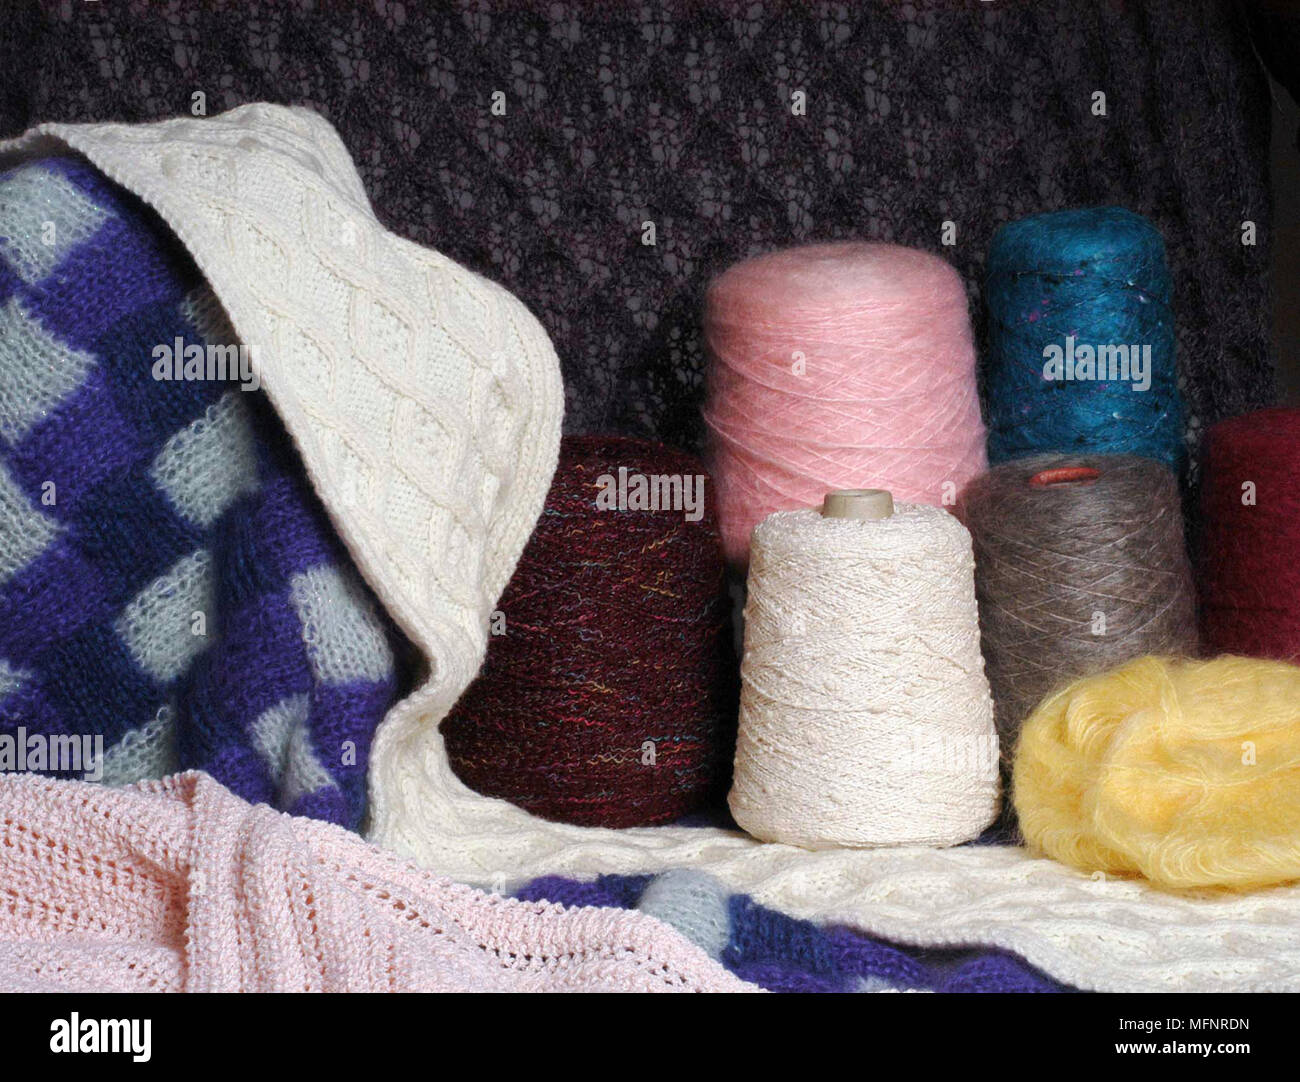 Spulen von verschiedenen farbigen Wolle Ref: CRB43 10056 005 obligatorische Credit: Garry Dunn/Photoshot Stockfoto